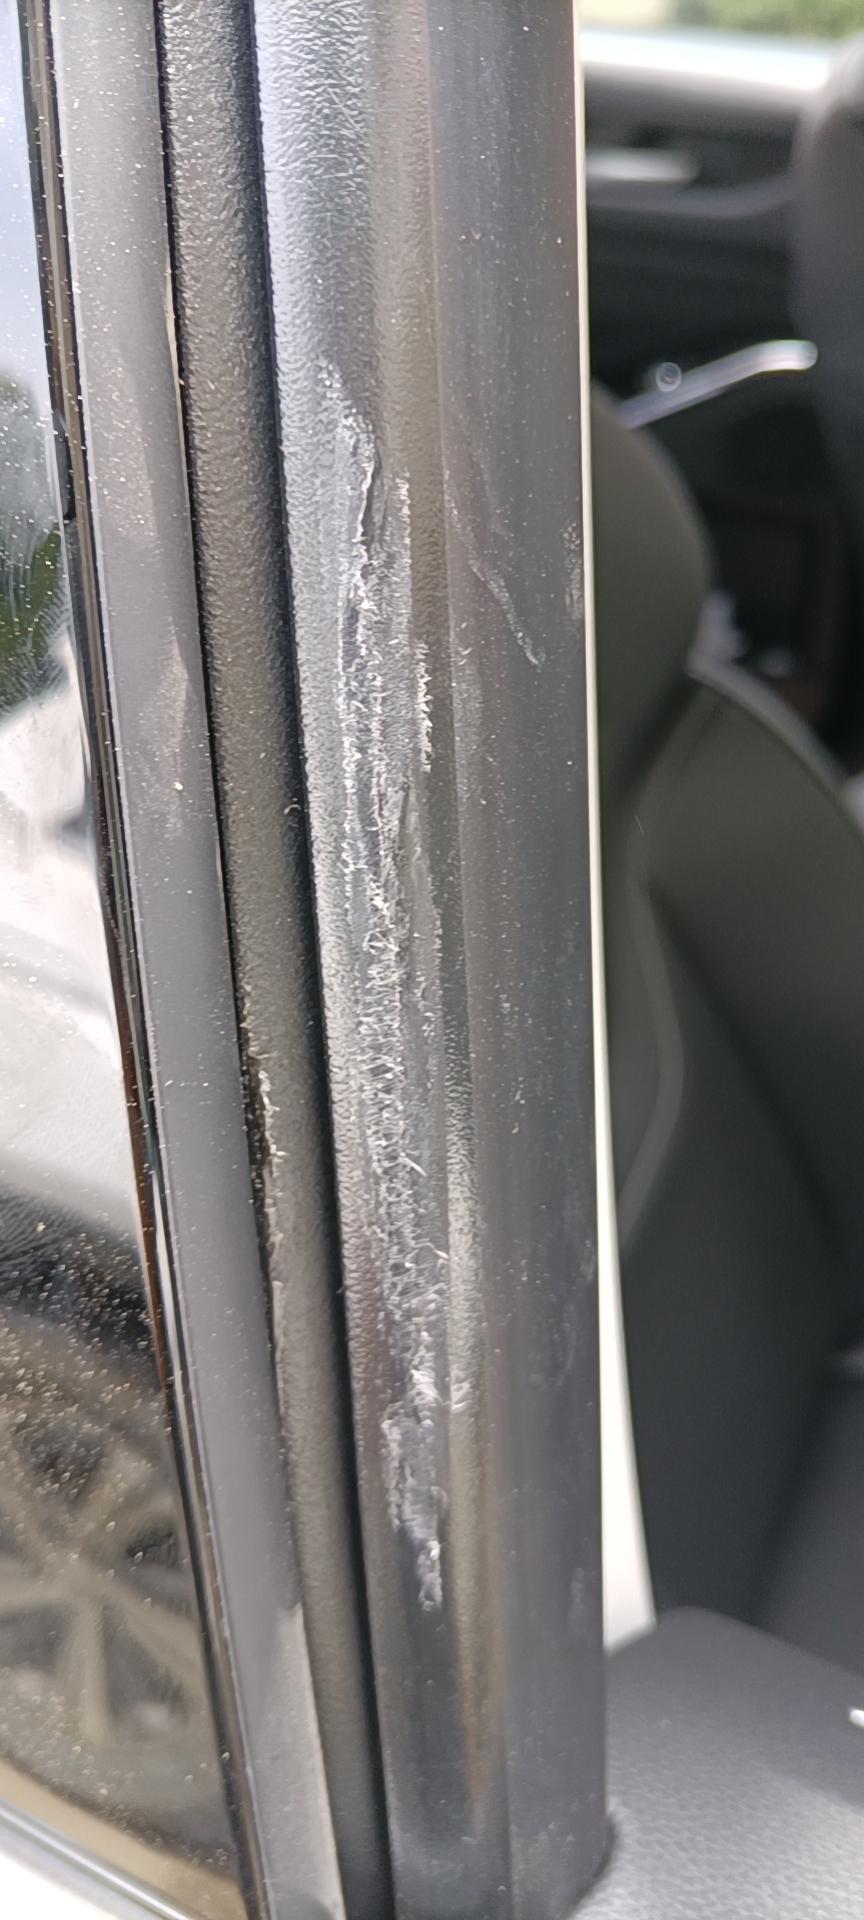 有弗H6车主知道这是什么原因造成的吗？贴完车膜开窗发现有磨损